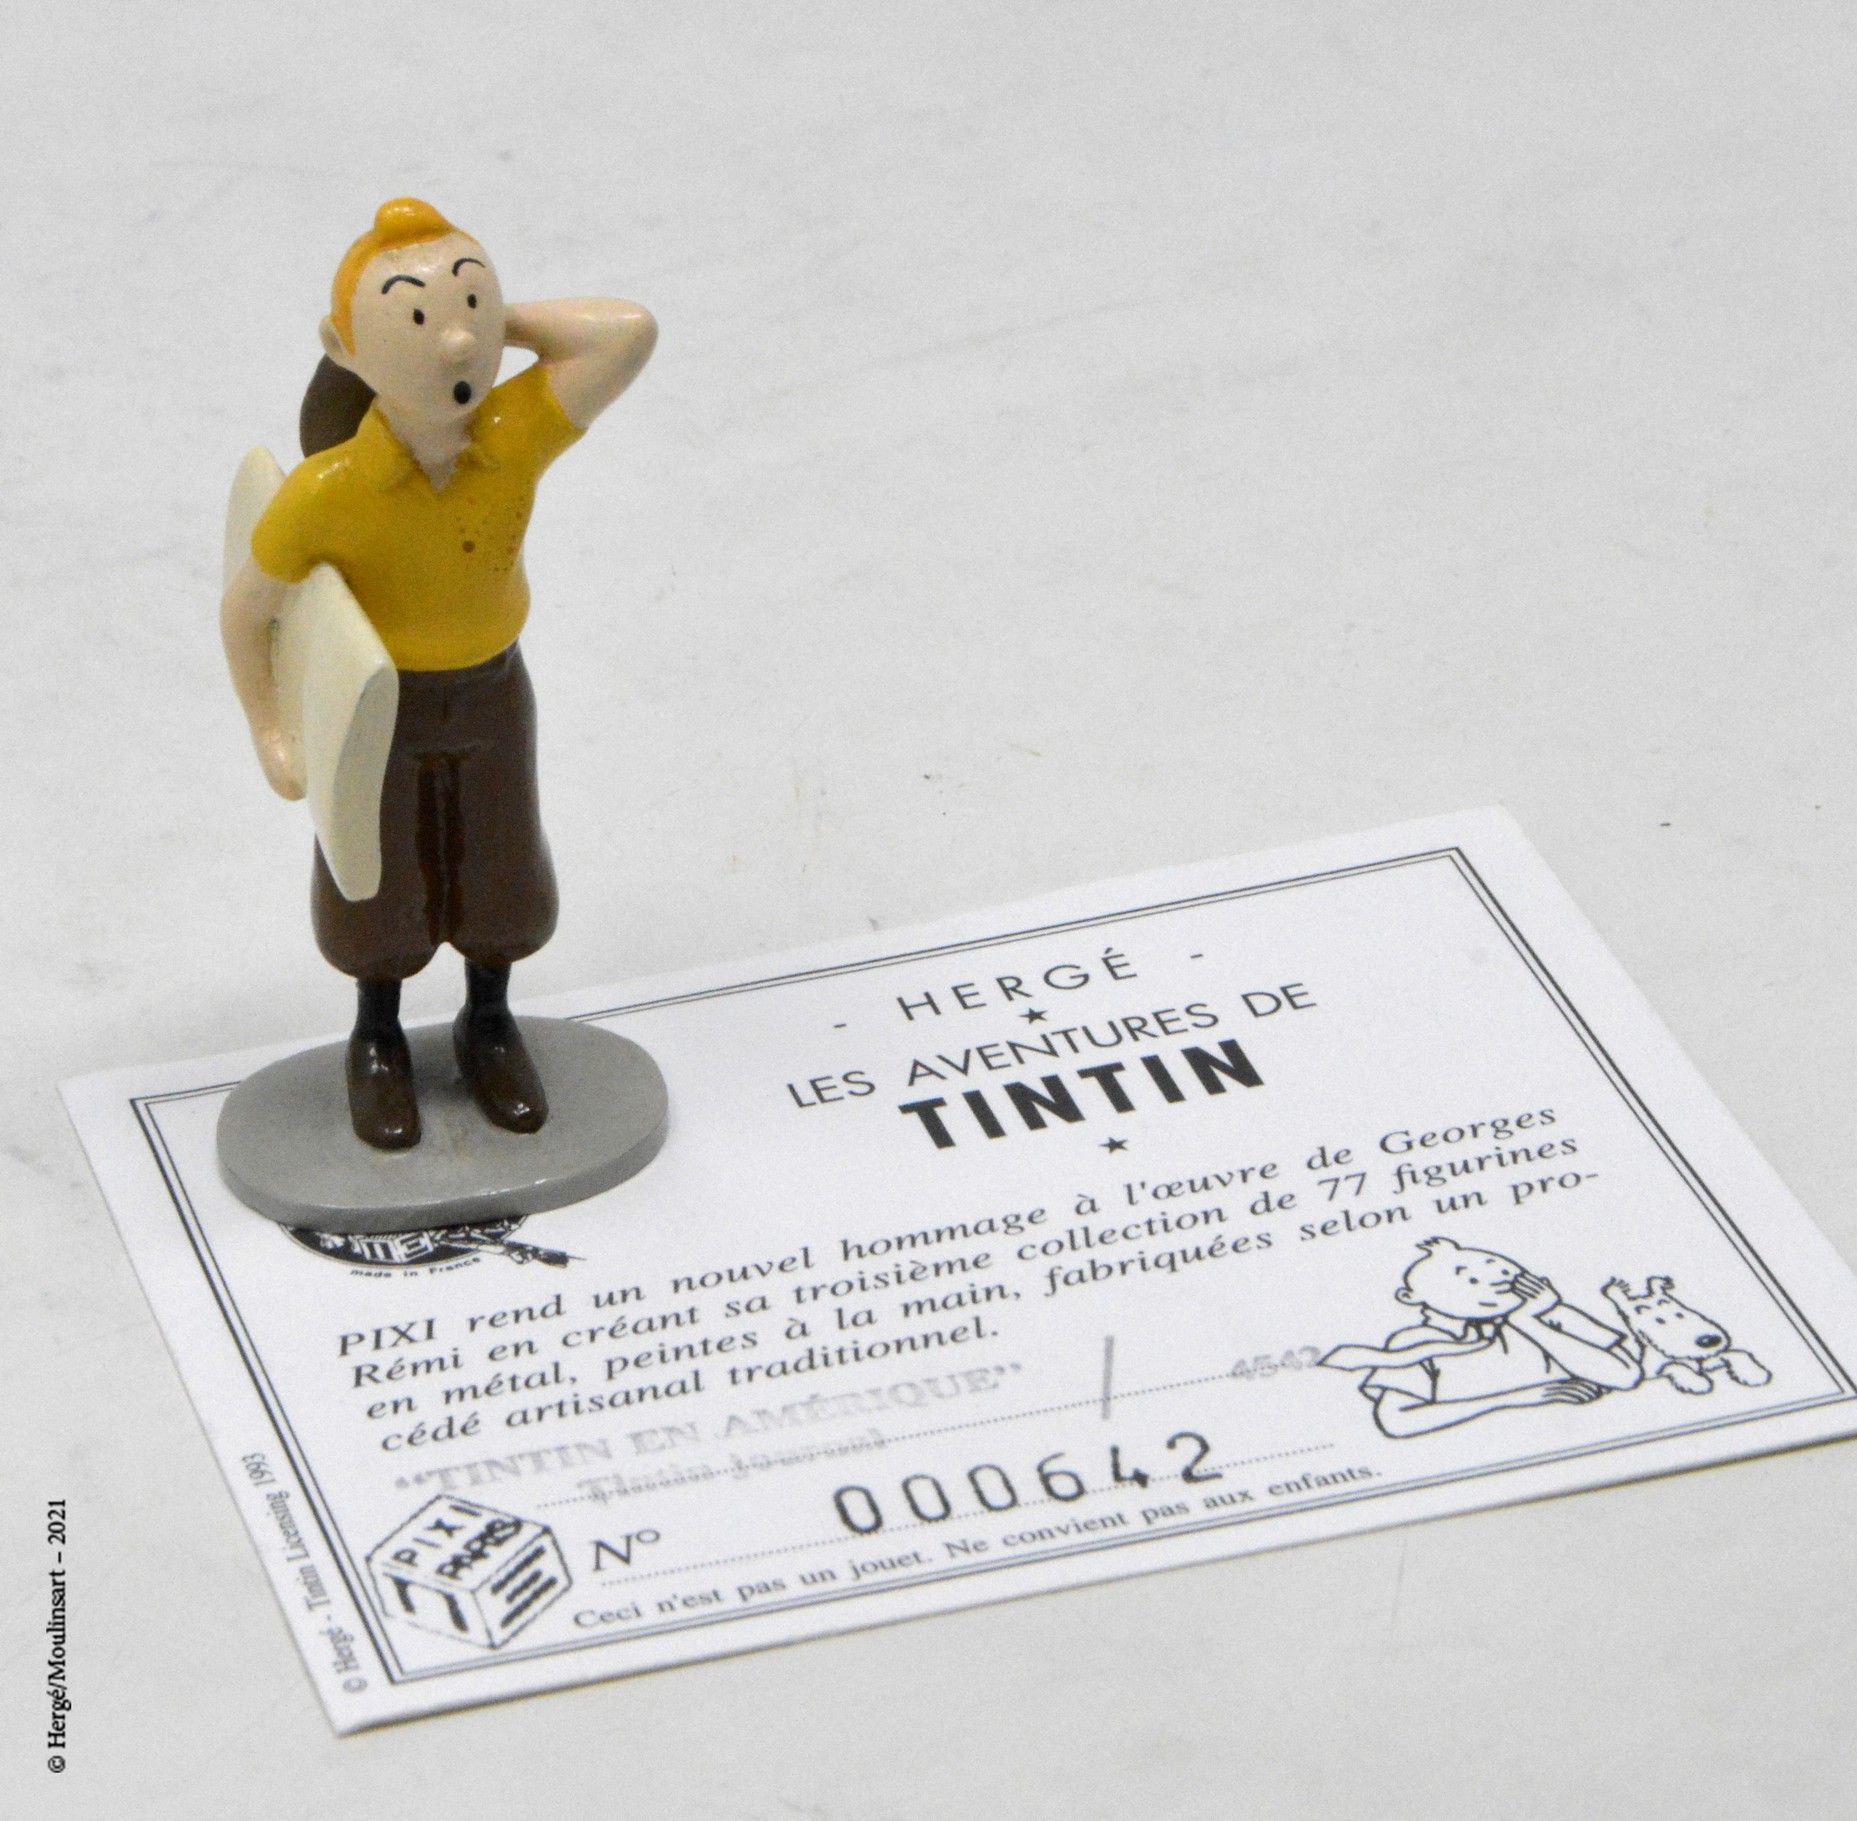 Tintin en Amérique 赫格/皮克斯（HERGÉ/PIXI

Hergé :Tintin系列第3号

丁丁在美国：丁丁日记（1993年

参考资料&hellip;